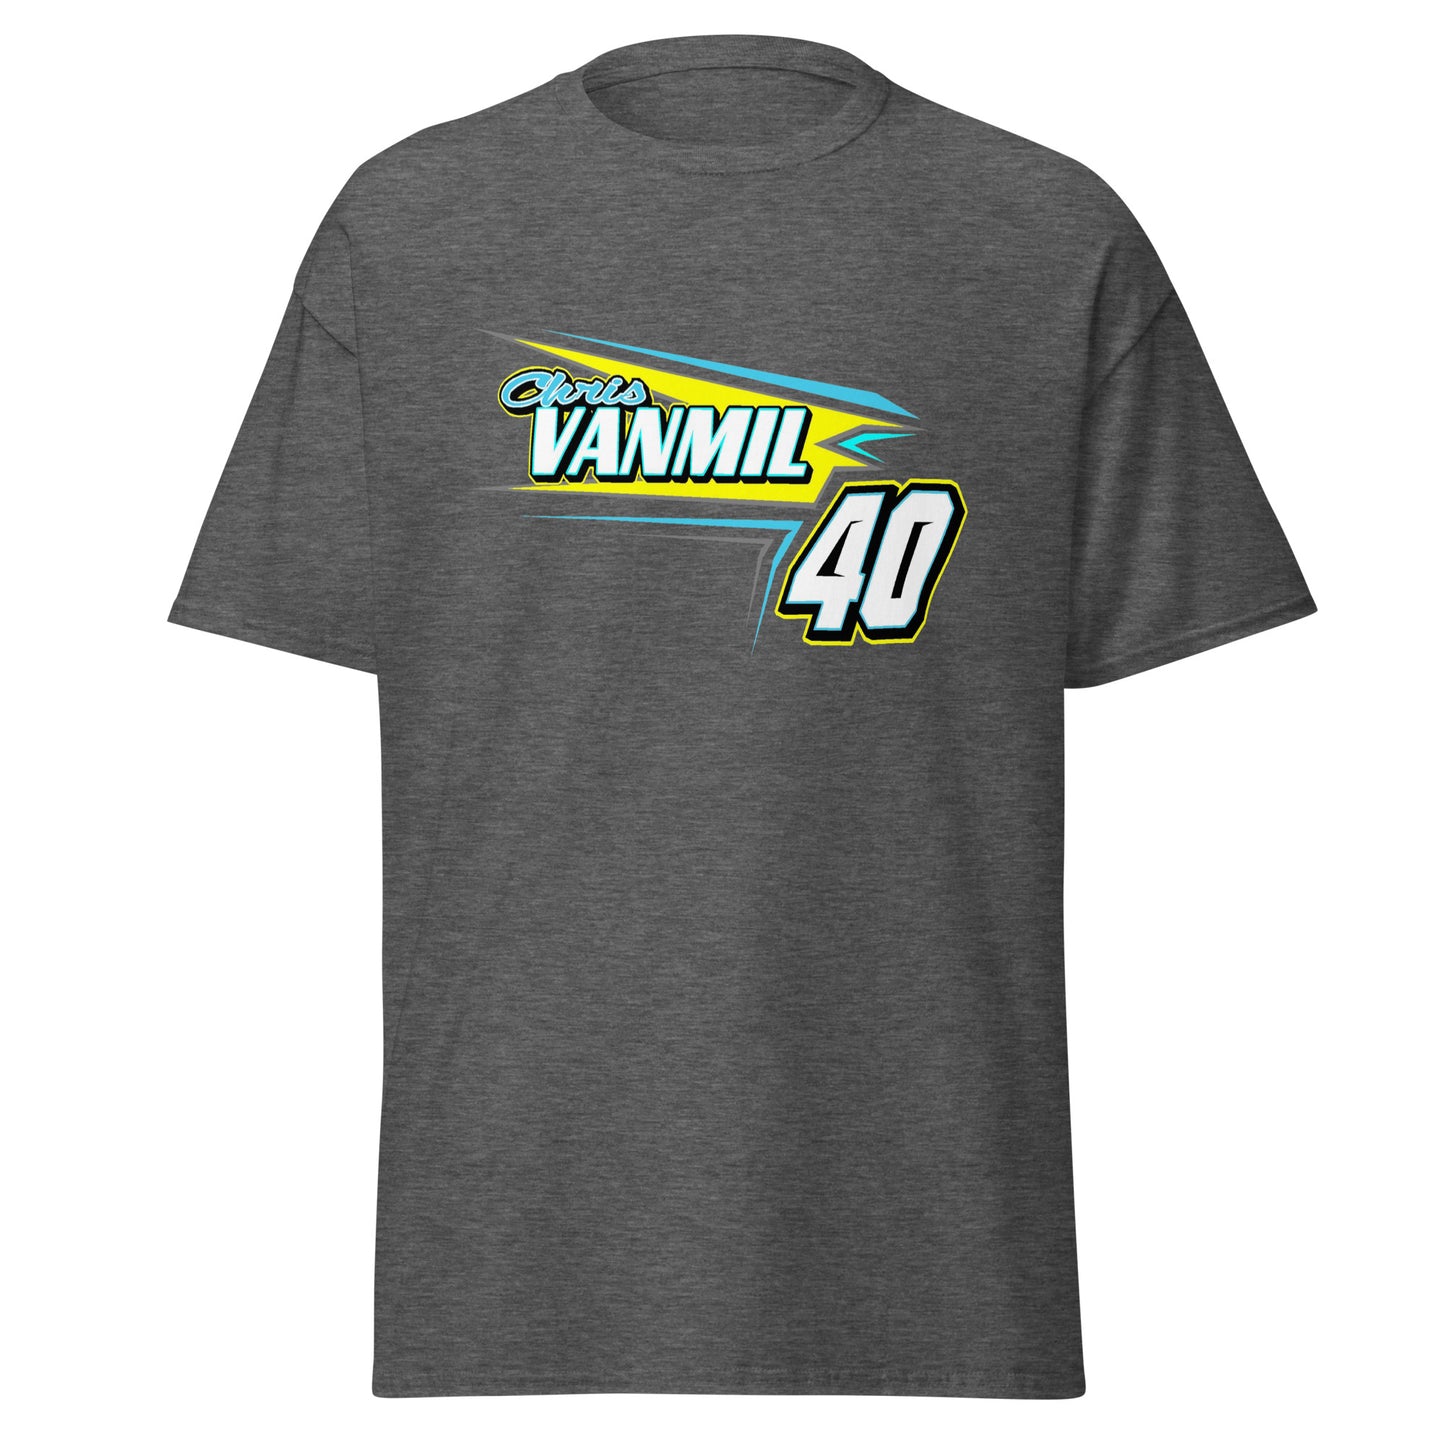 Chris Vanmil Adult T-Shirt